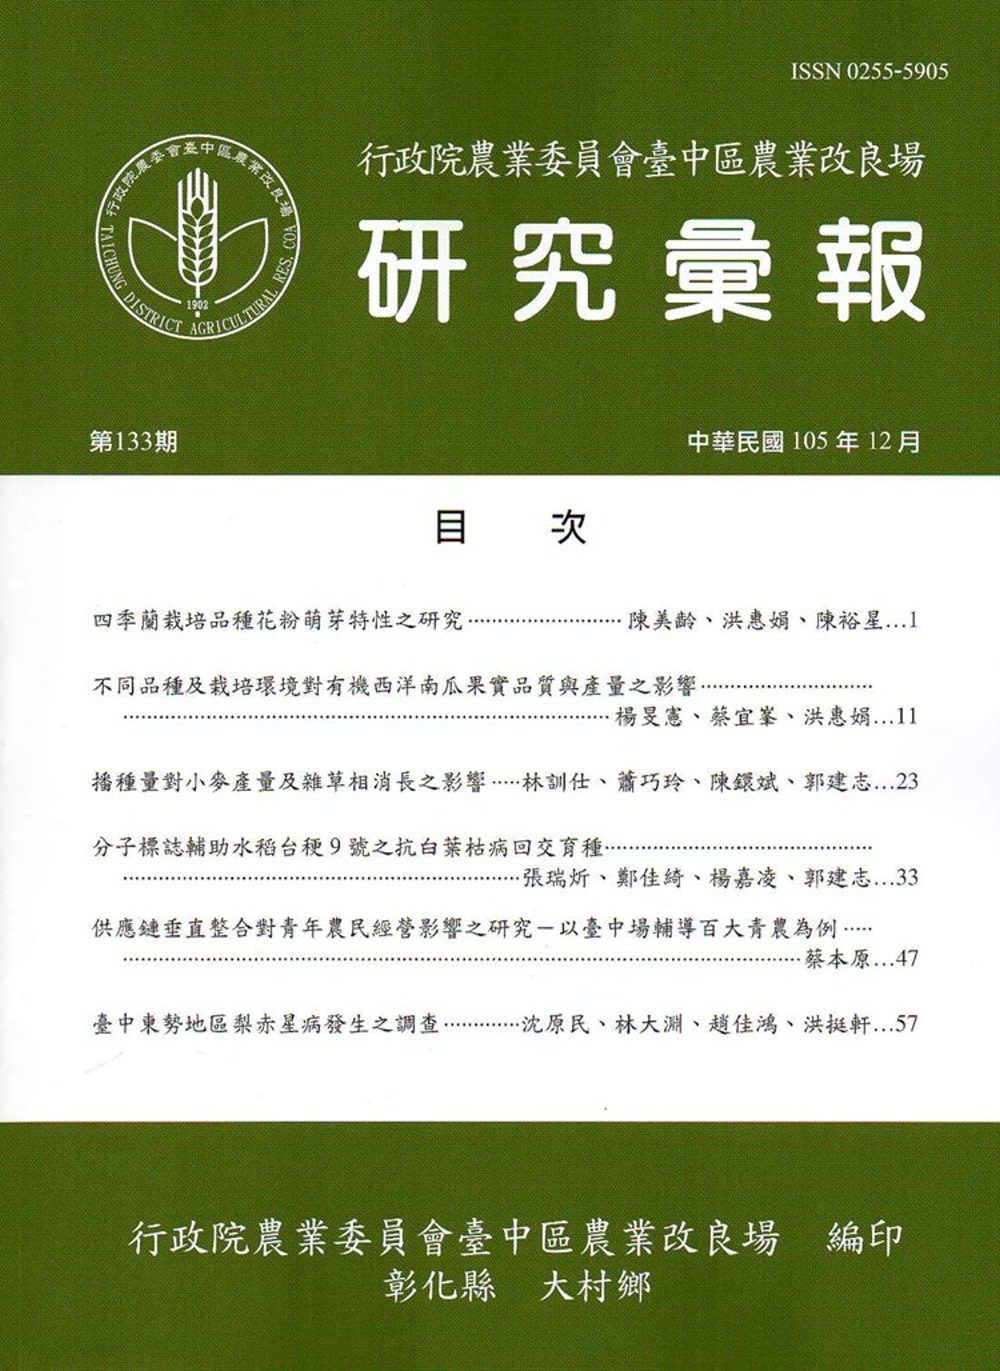 研究彙報133期(105/12)-行政院農業委員會臺中區農業改良場